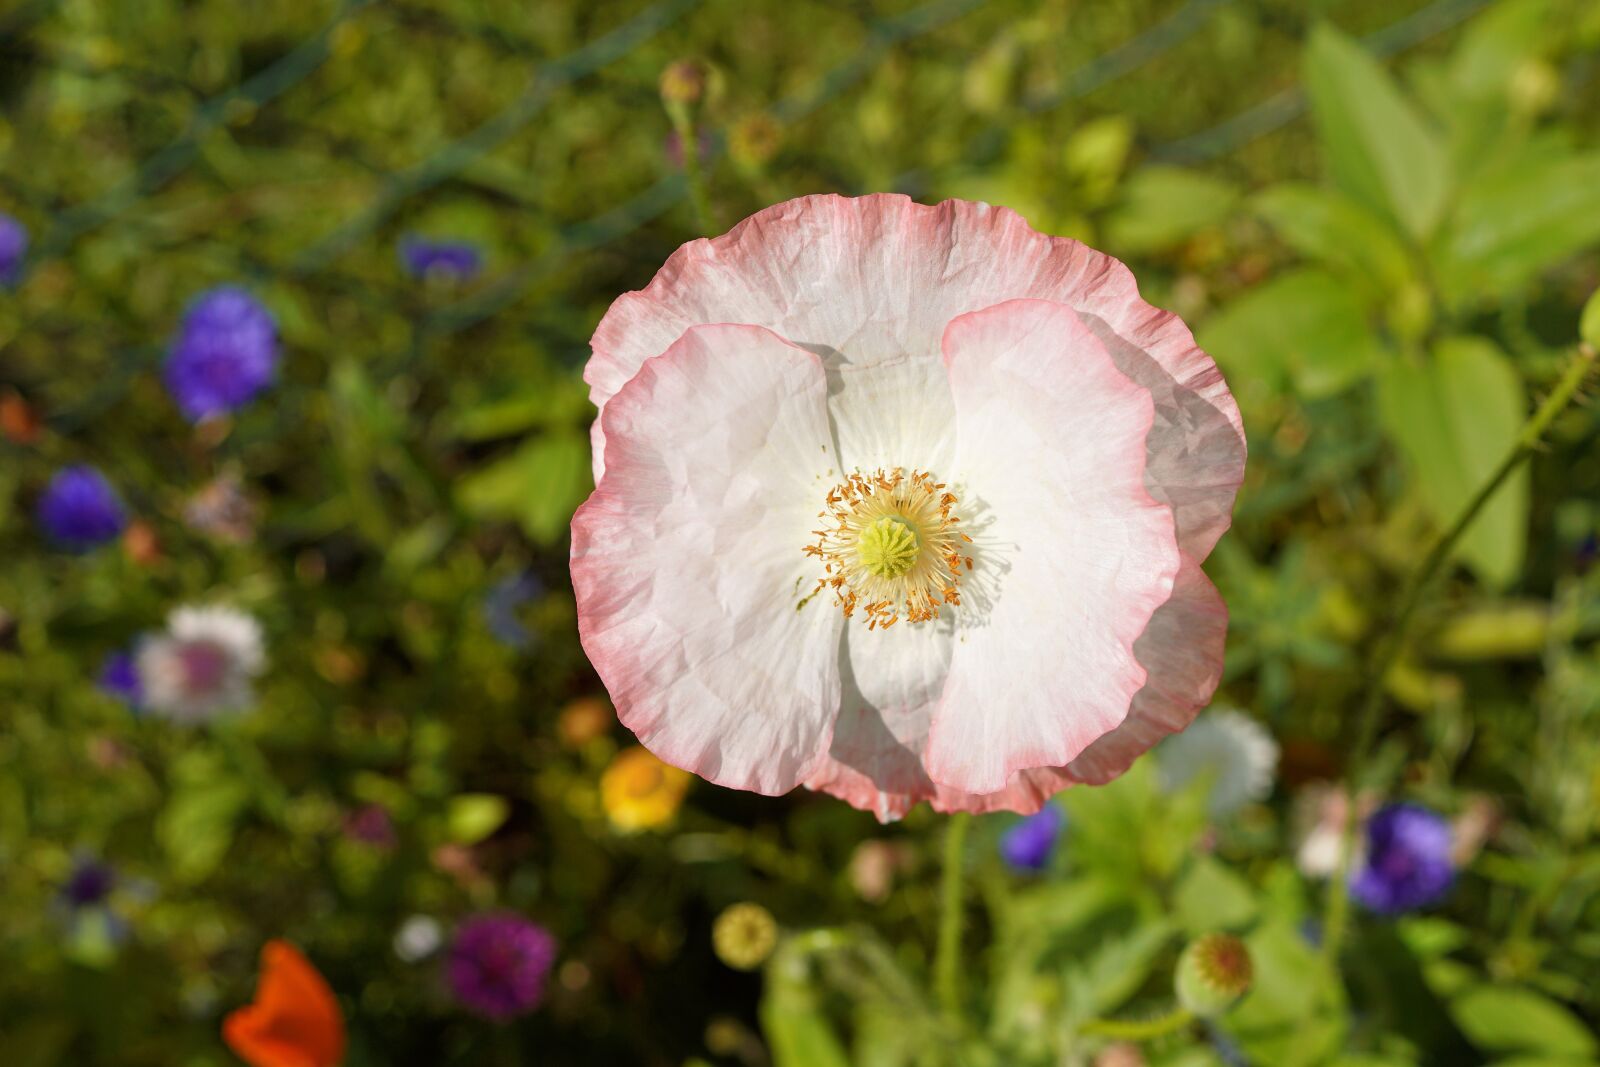 Sony DT 30mm F2.8 Macro SAM sample photo. Poppy, blossom, bloom photography